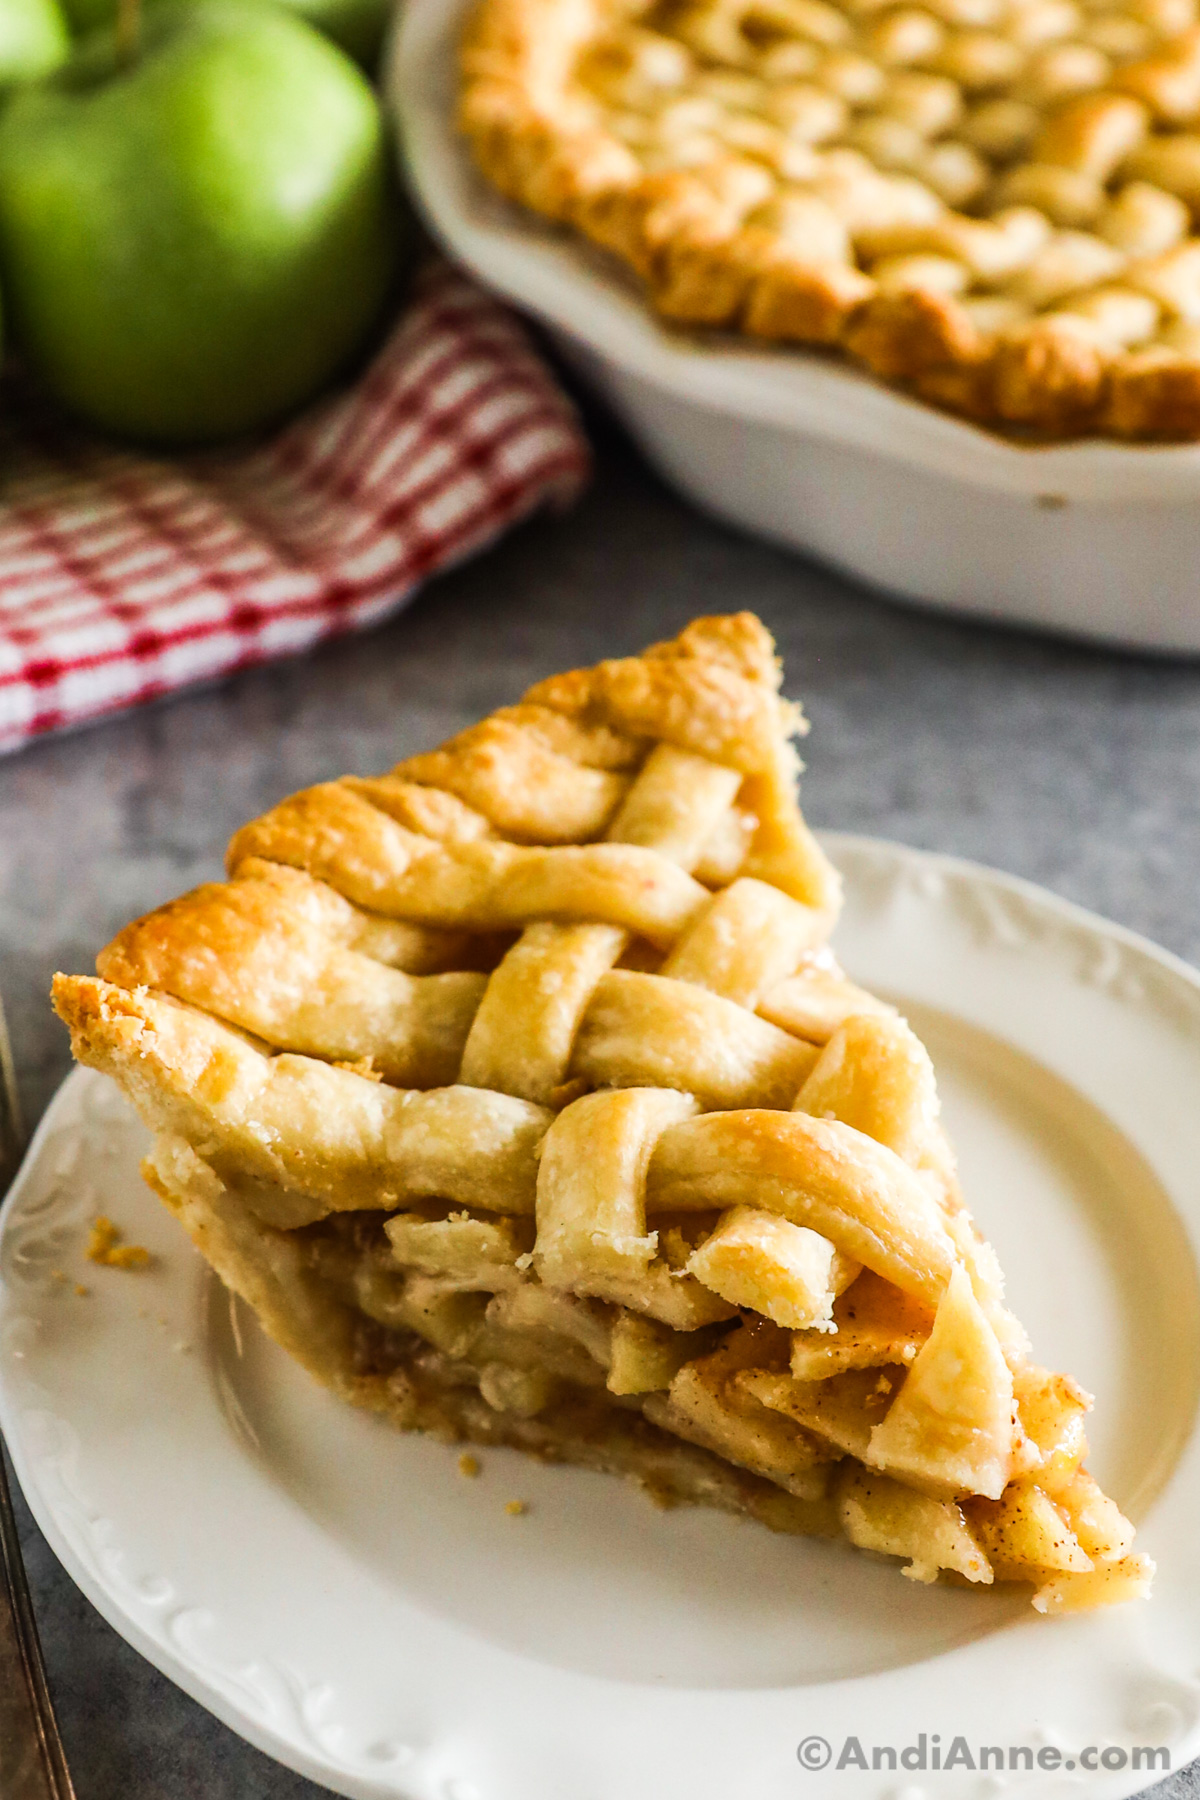 A slice of apple pie with lattice crust.